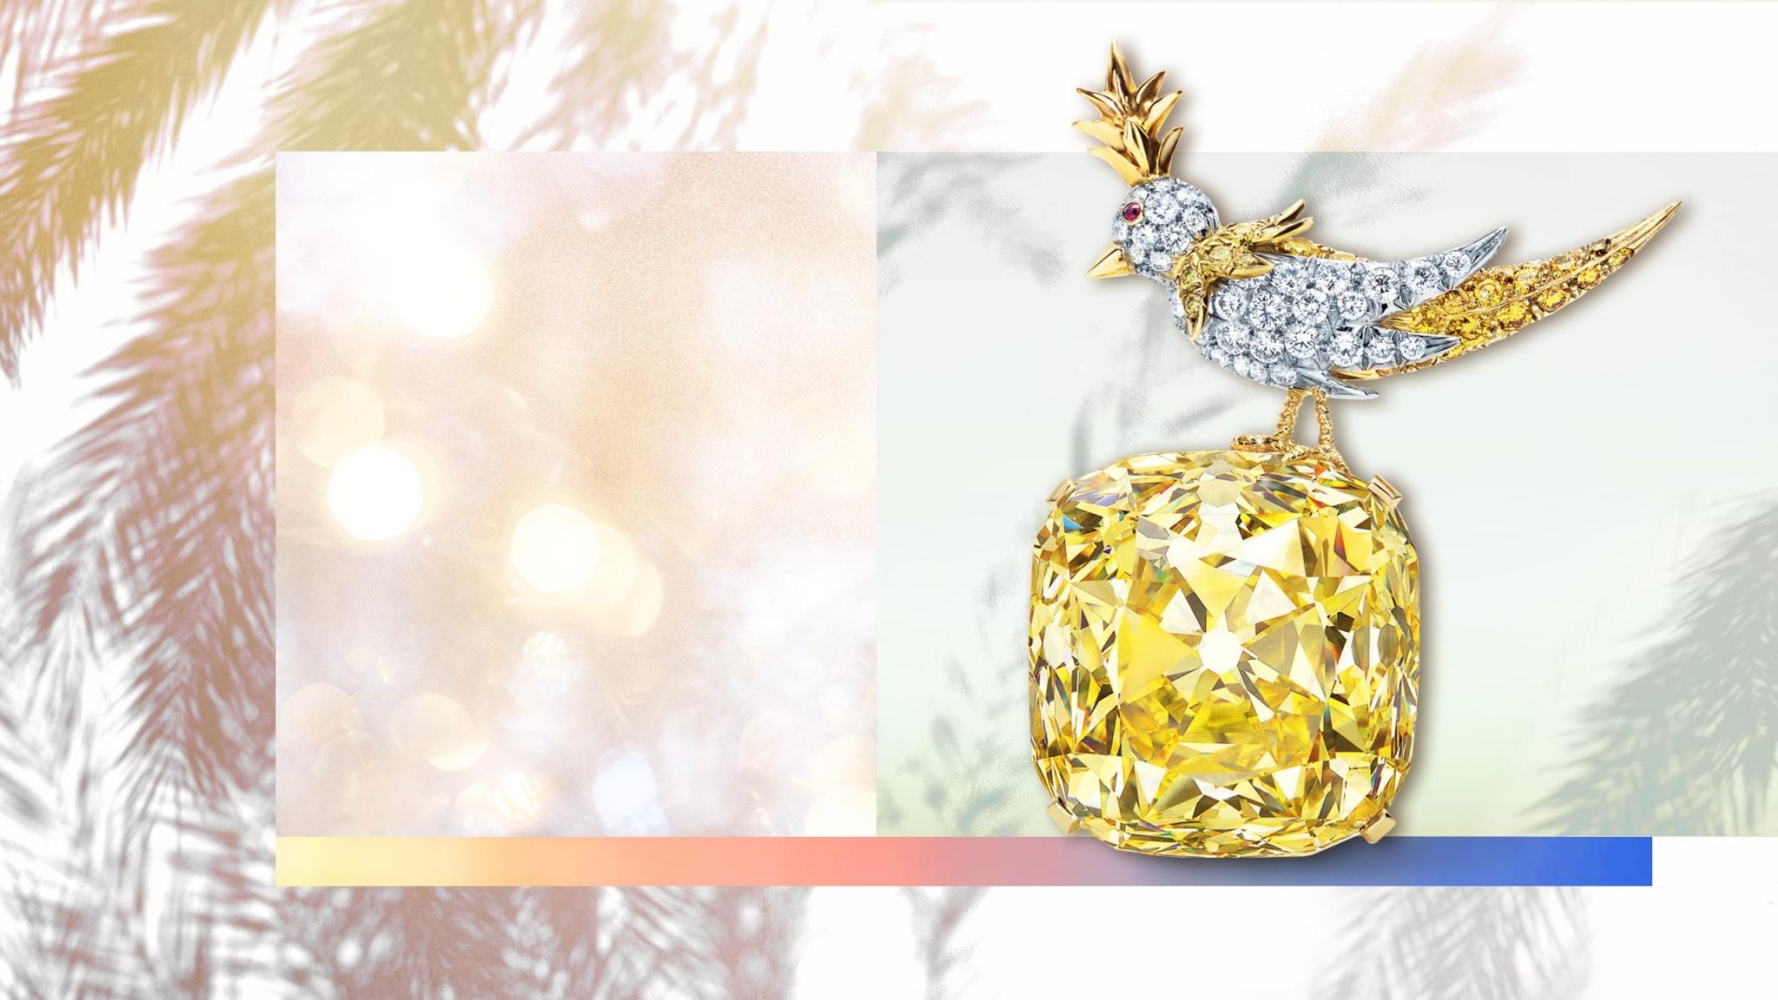 Viên kim cương vàng trứ danh, do nhà sáng lập Tiffany & Co. thu mua, đưa ông đến với danh xưng "Vua kim cương", tái sinh trong thiết kế Bird on a Rock năm 1995. Ảnh: Tiffany & Co. 